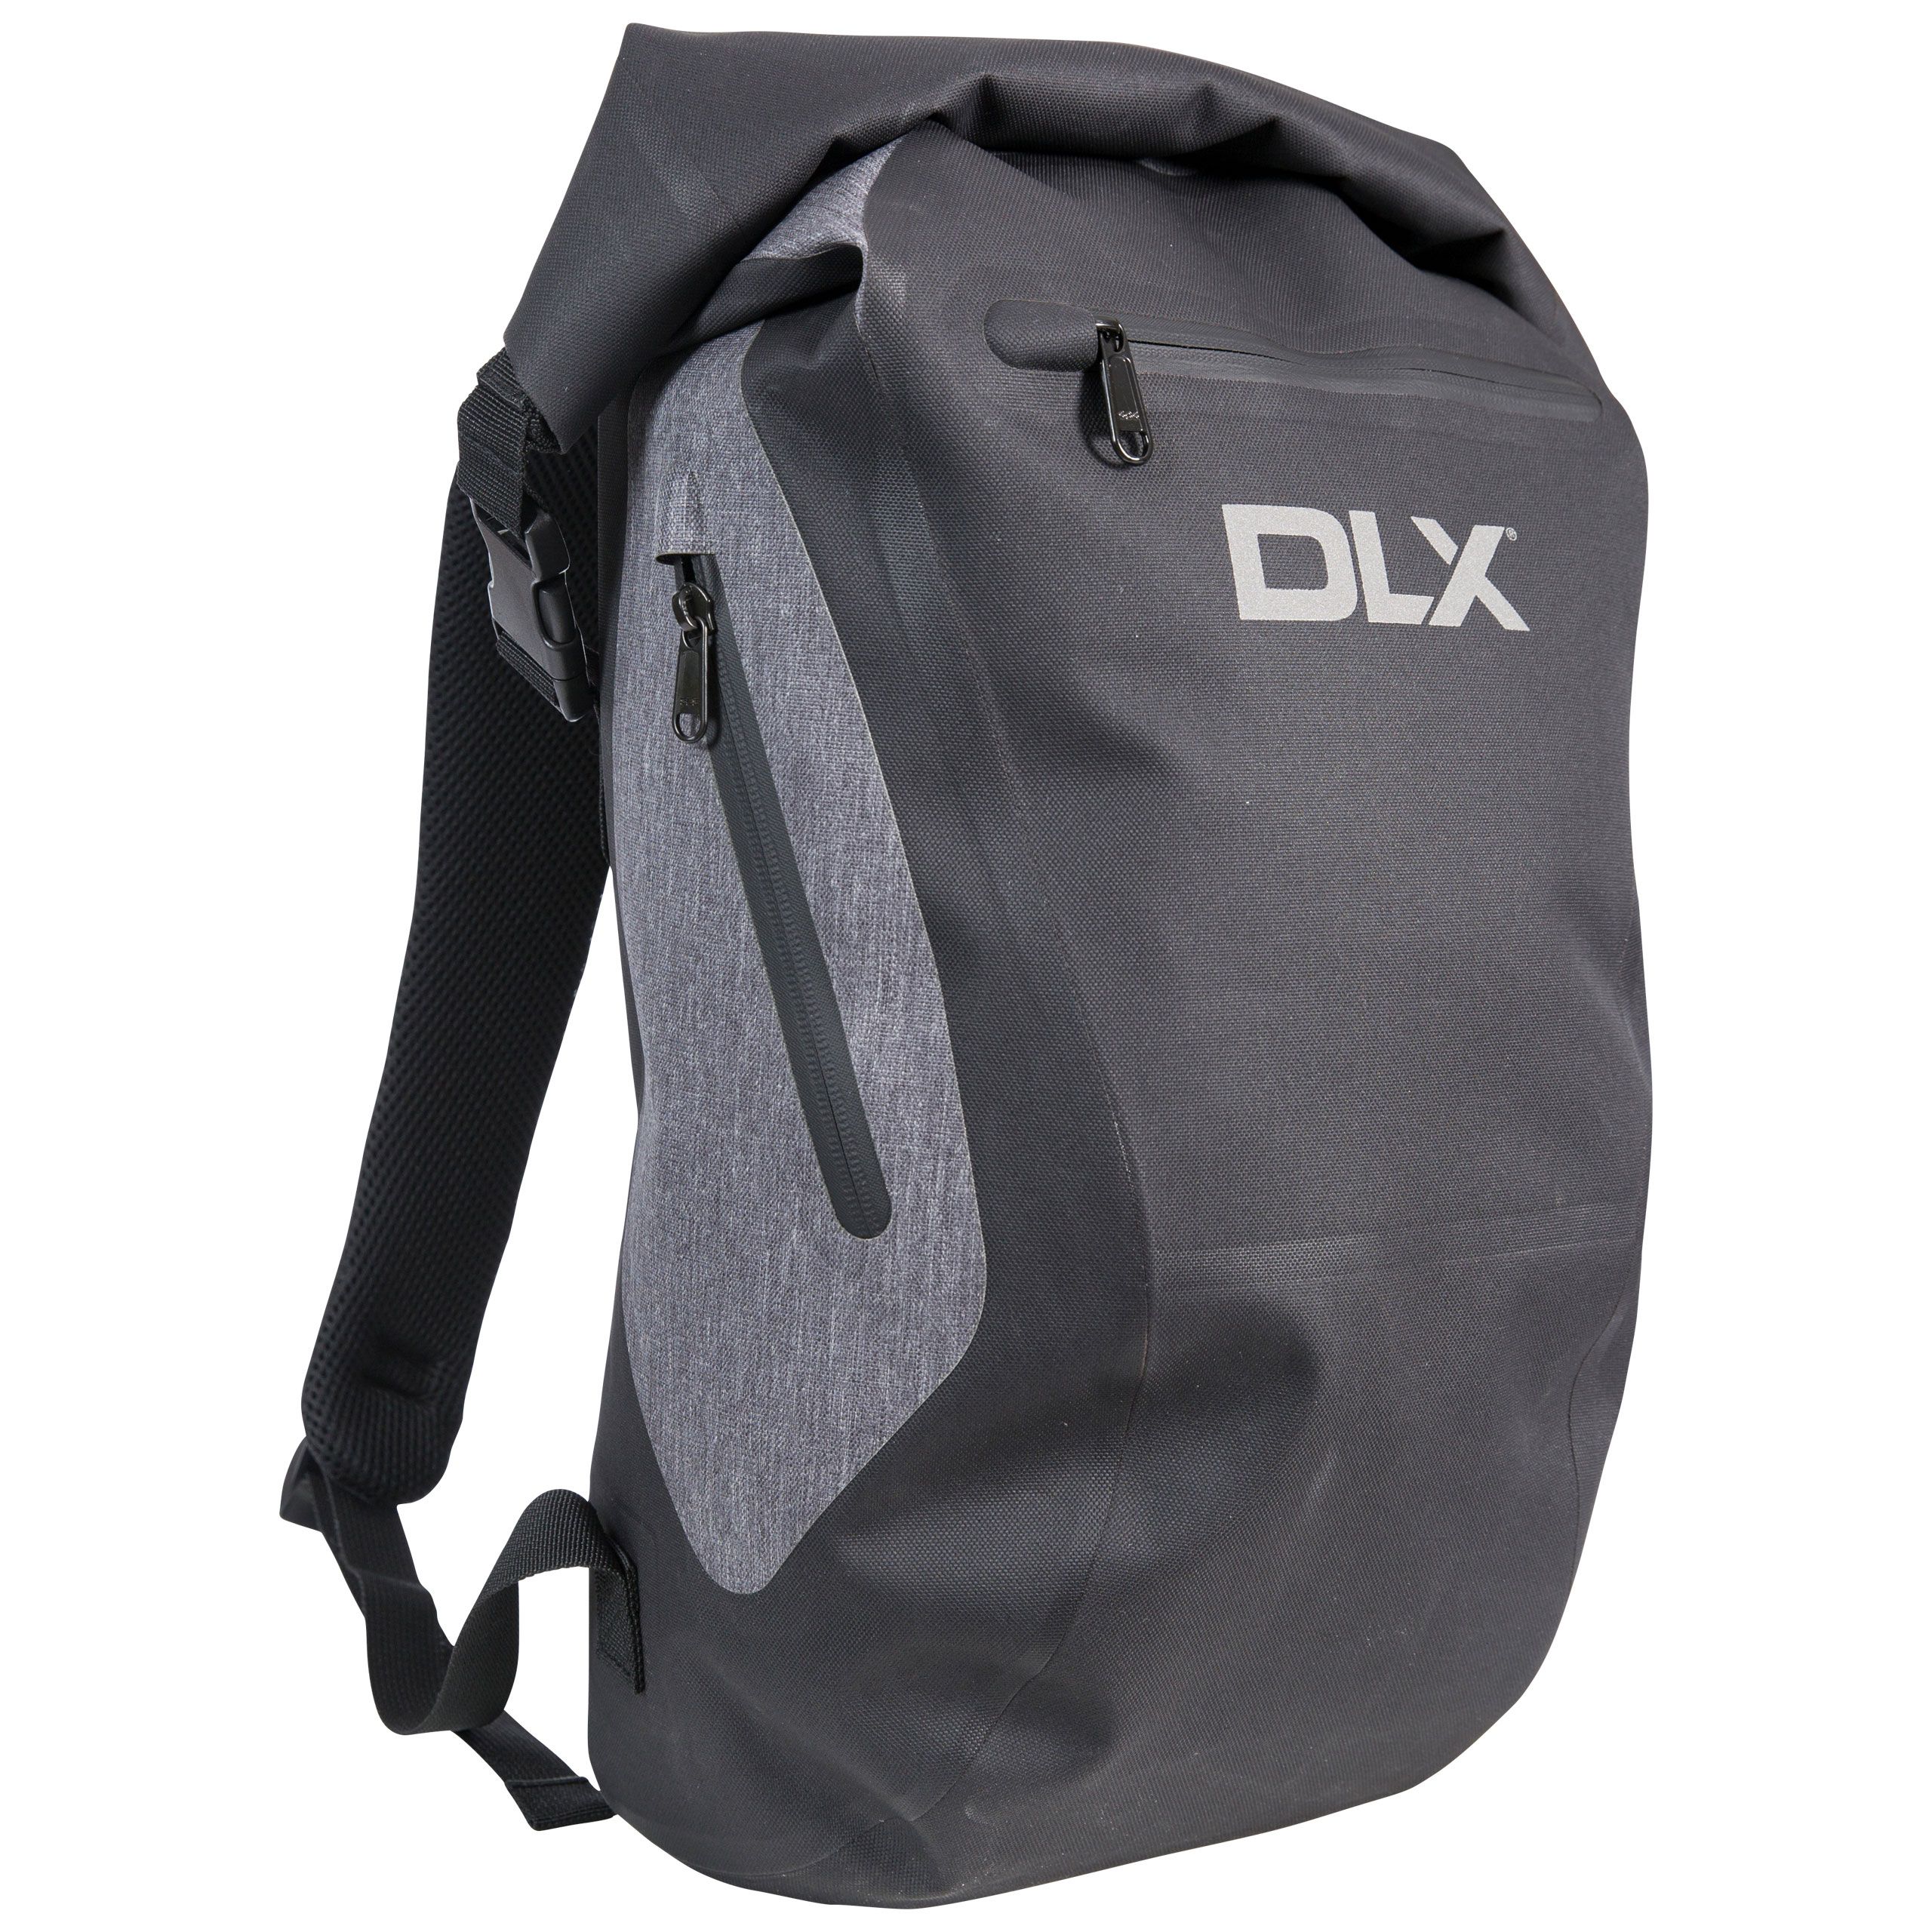 Gentoo Dlx 20l Waterproof Roll Top Backpack